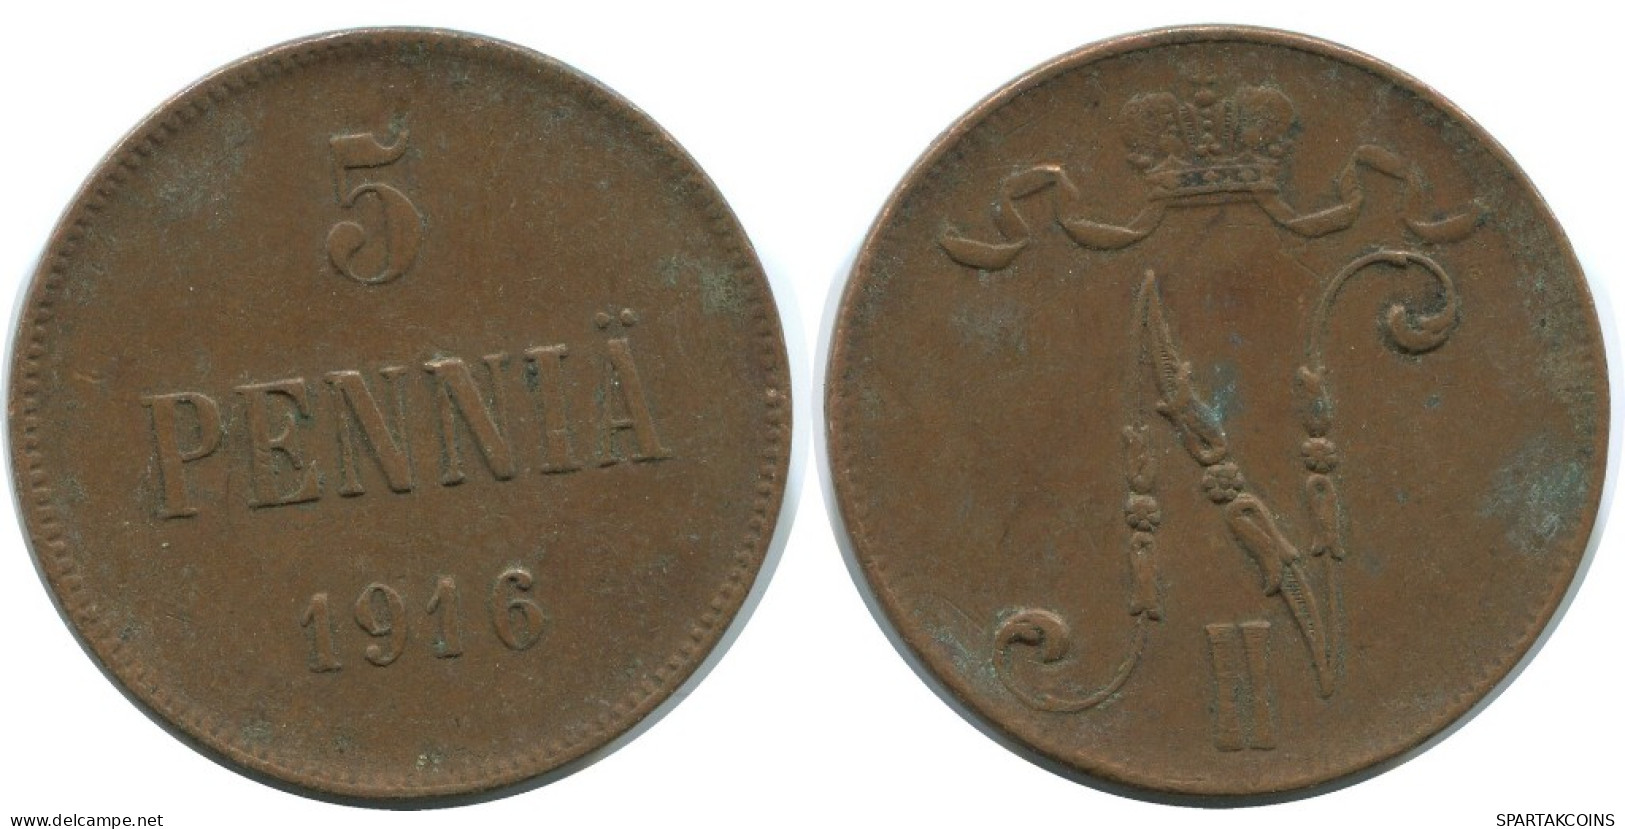 5 PENNIA 1916 FINLANDIA FINLAND Moneda RUSIA RUSSIA EMPIRE #AB196.5.E.A - Finland